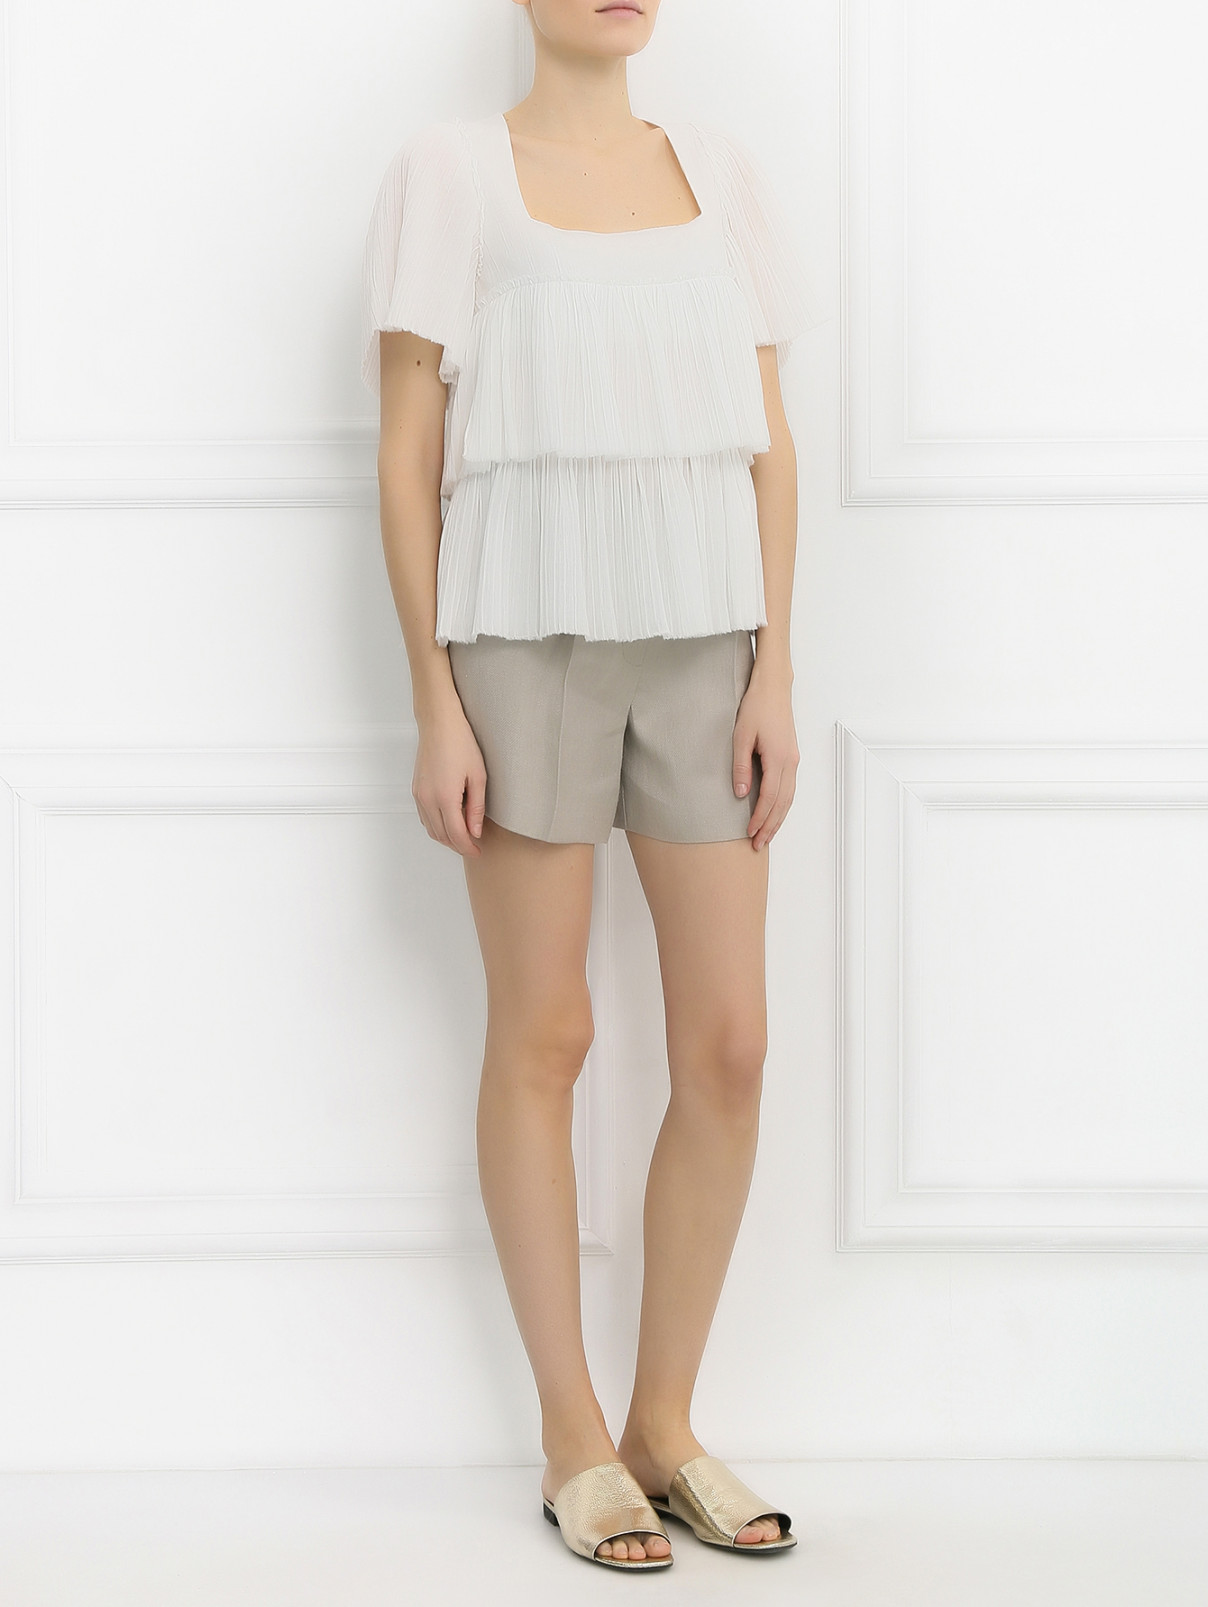 Блуза из хлопка Sonia Rykiel  –  Модель Общий вид  – Цвет:  Белый